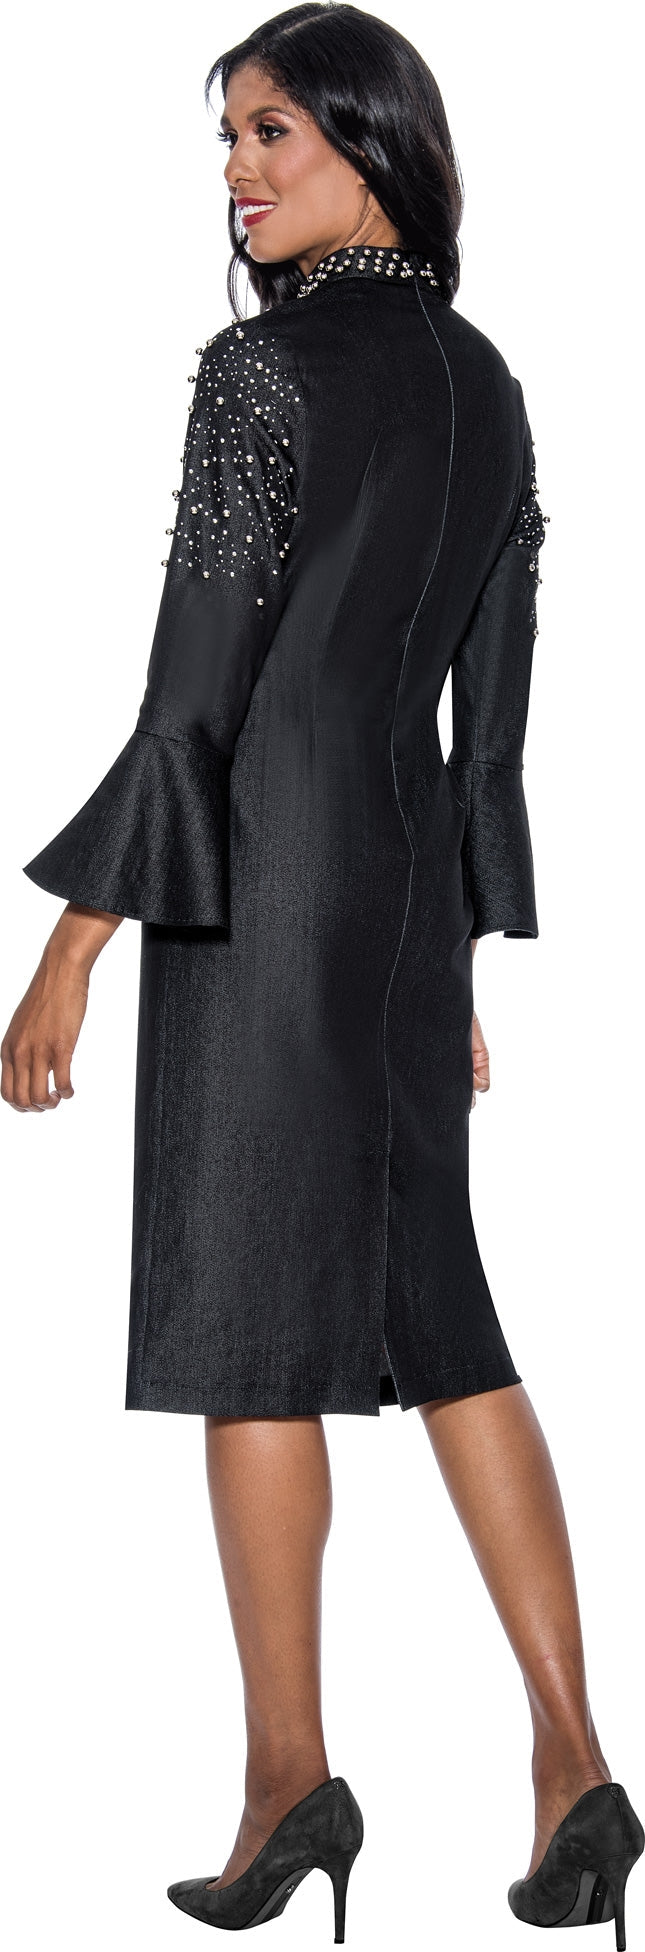 Devine Sport Denim Dress 63951 - Church Suits For Less